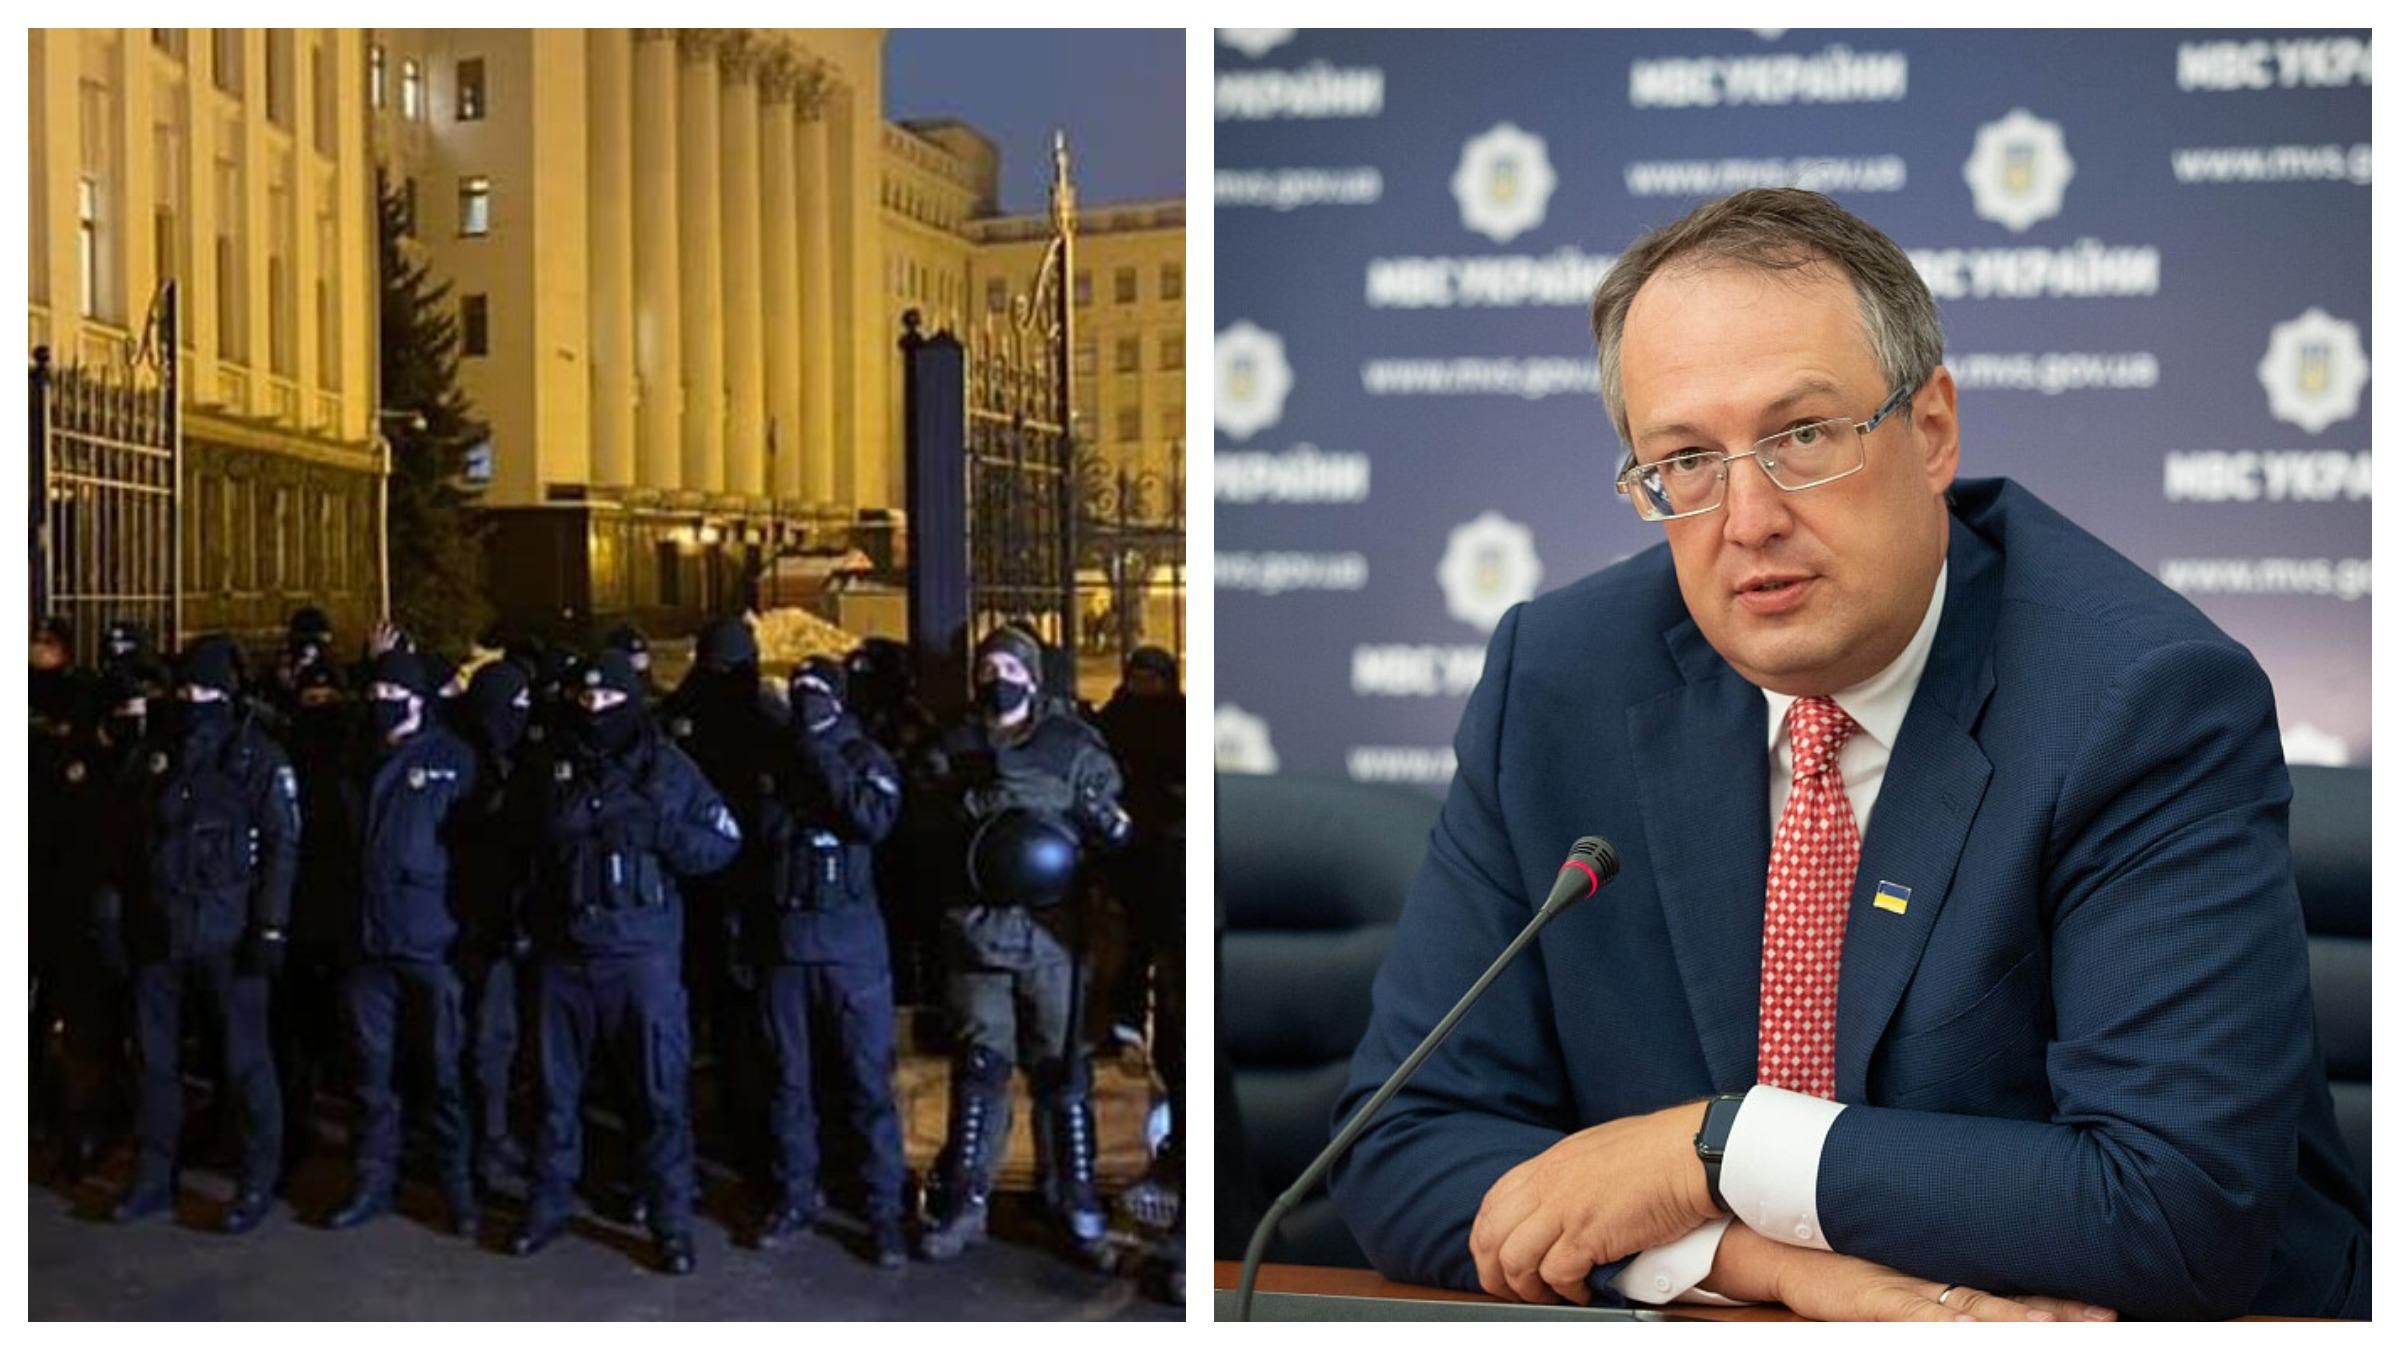 Акция за Стерненко 27 февраля: кордонов полиции на Банковой не будет